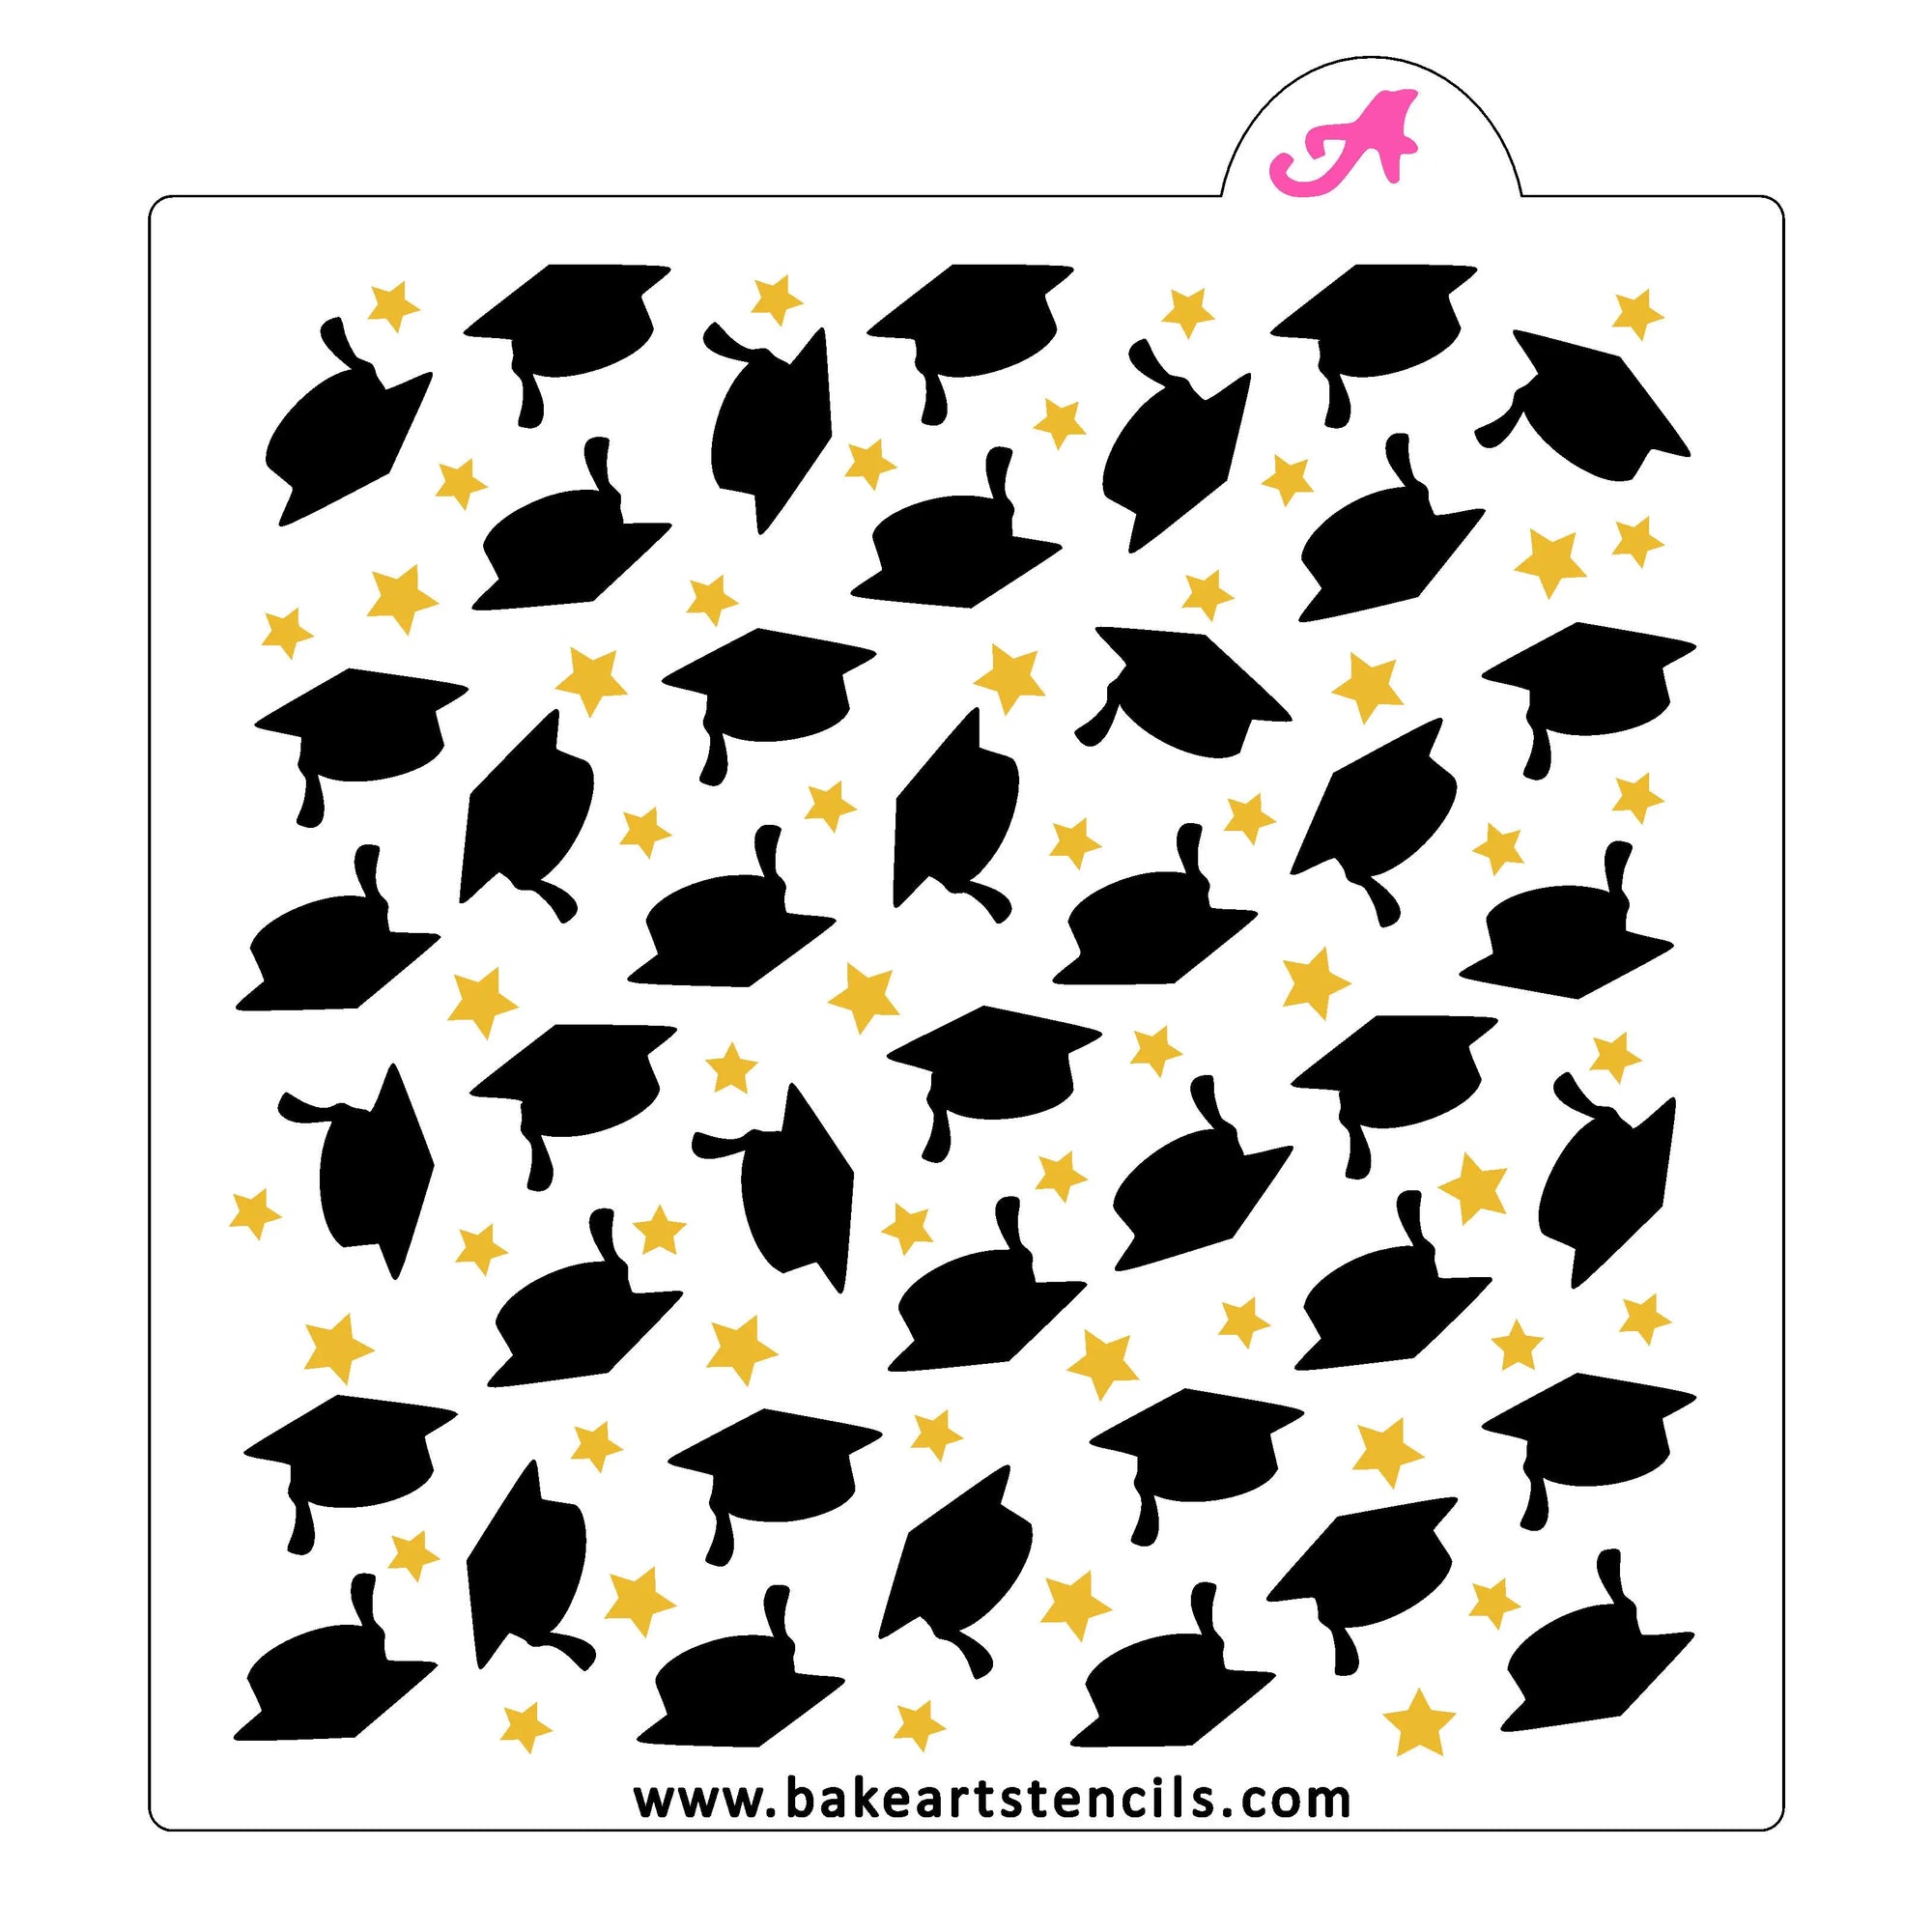 Class of 2023 OR 2024 Graduation Cap Vertical Digital Design Download –  Stencil Expressions